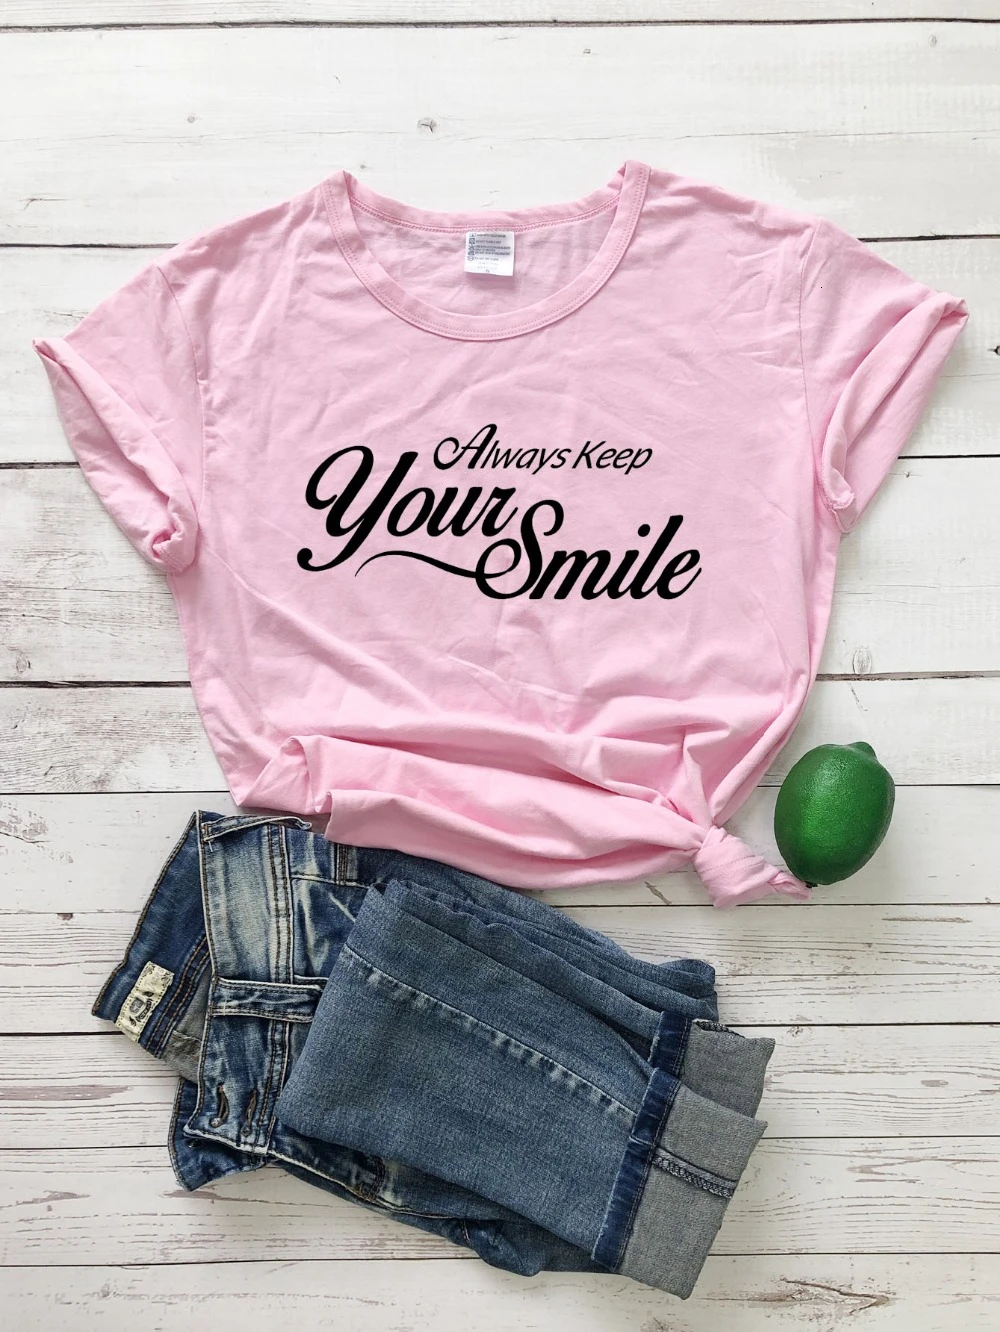 

Всегда держите улыбка футболка лозунг Цитата забавные чистый религия уличный стиль tumblr в винтажном стиле, футболки в стиле 90-х подарки для д...